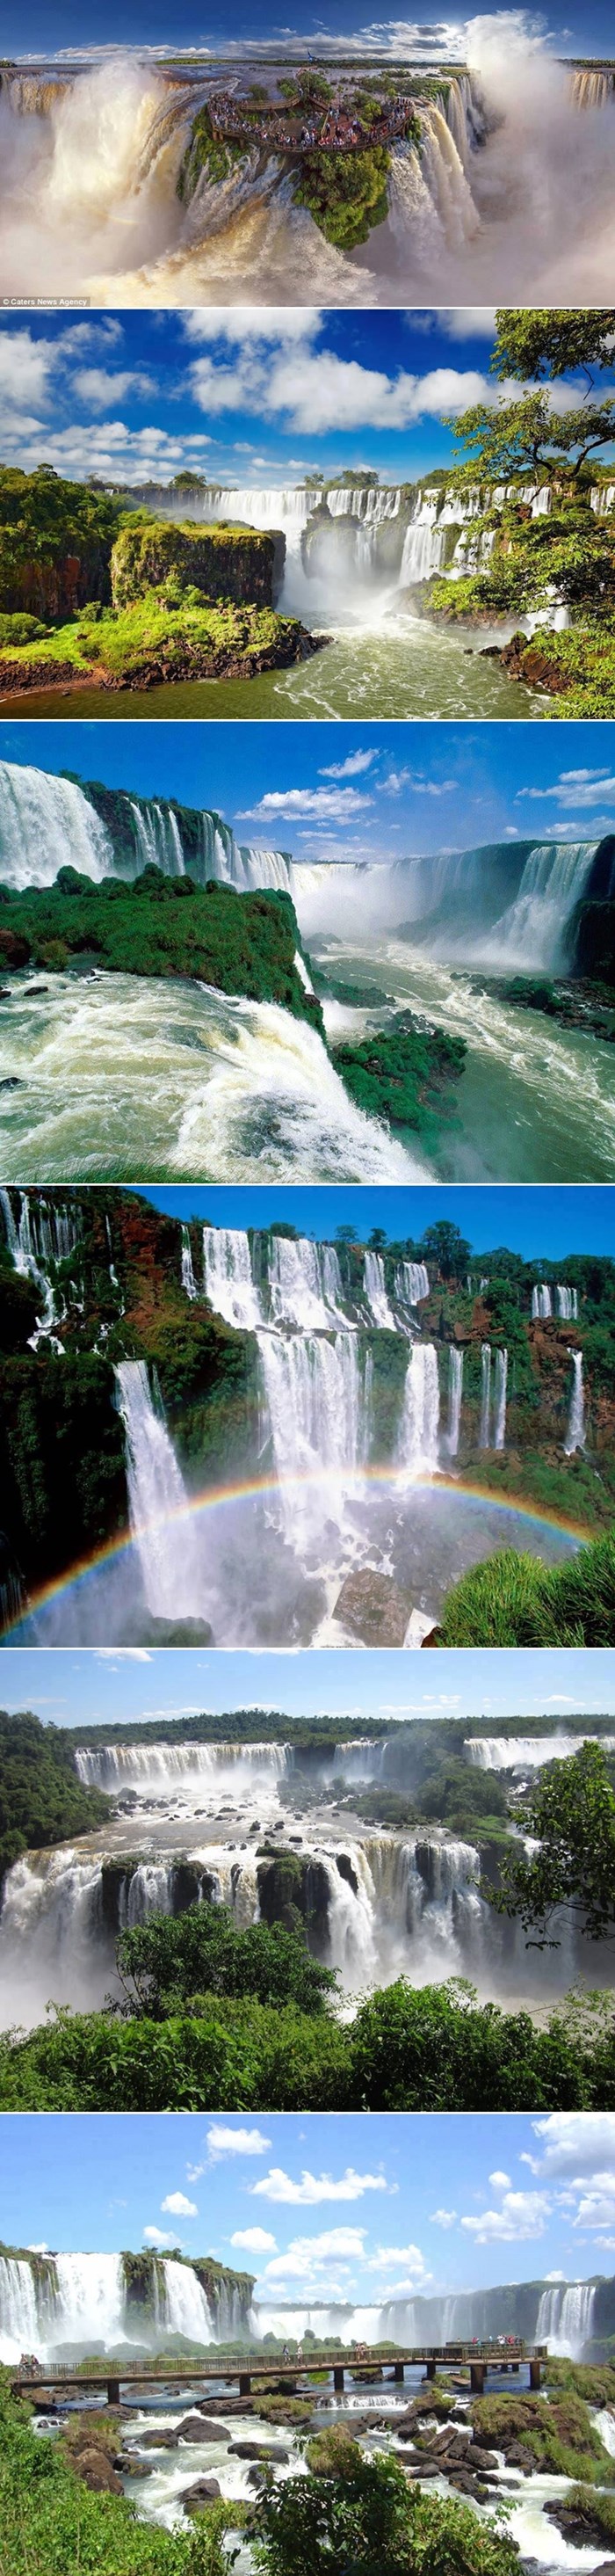 Galerija: Rajska ljepota slapova Iguazu